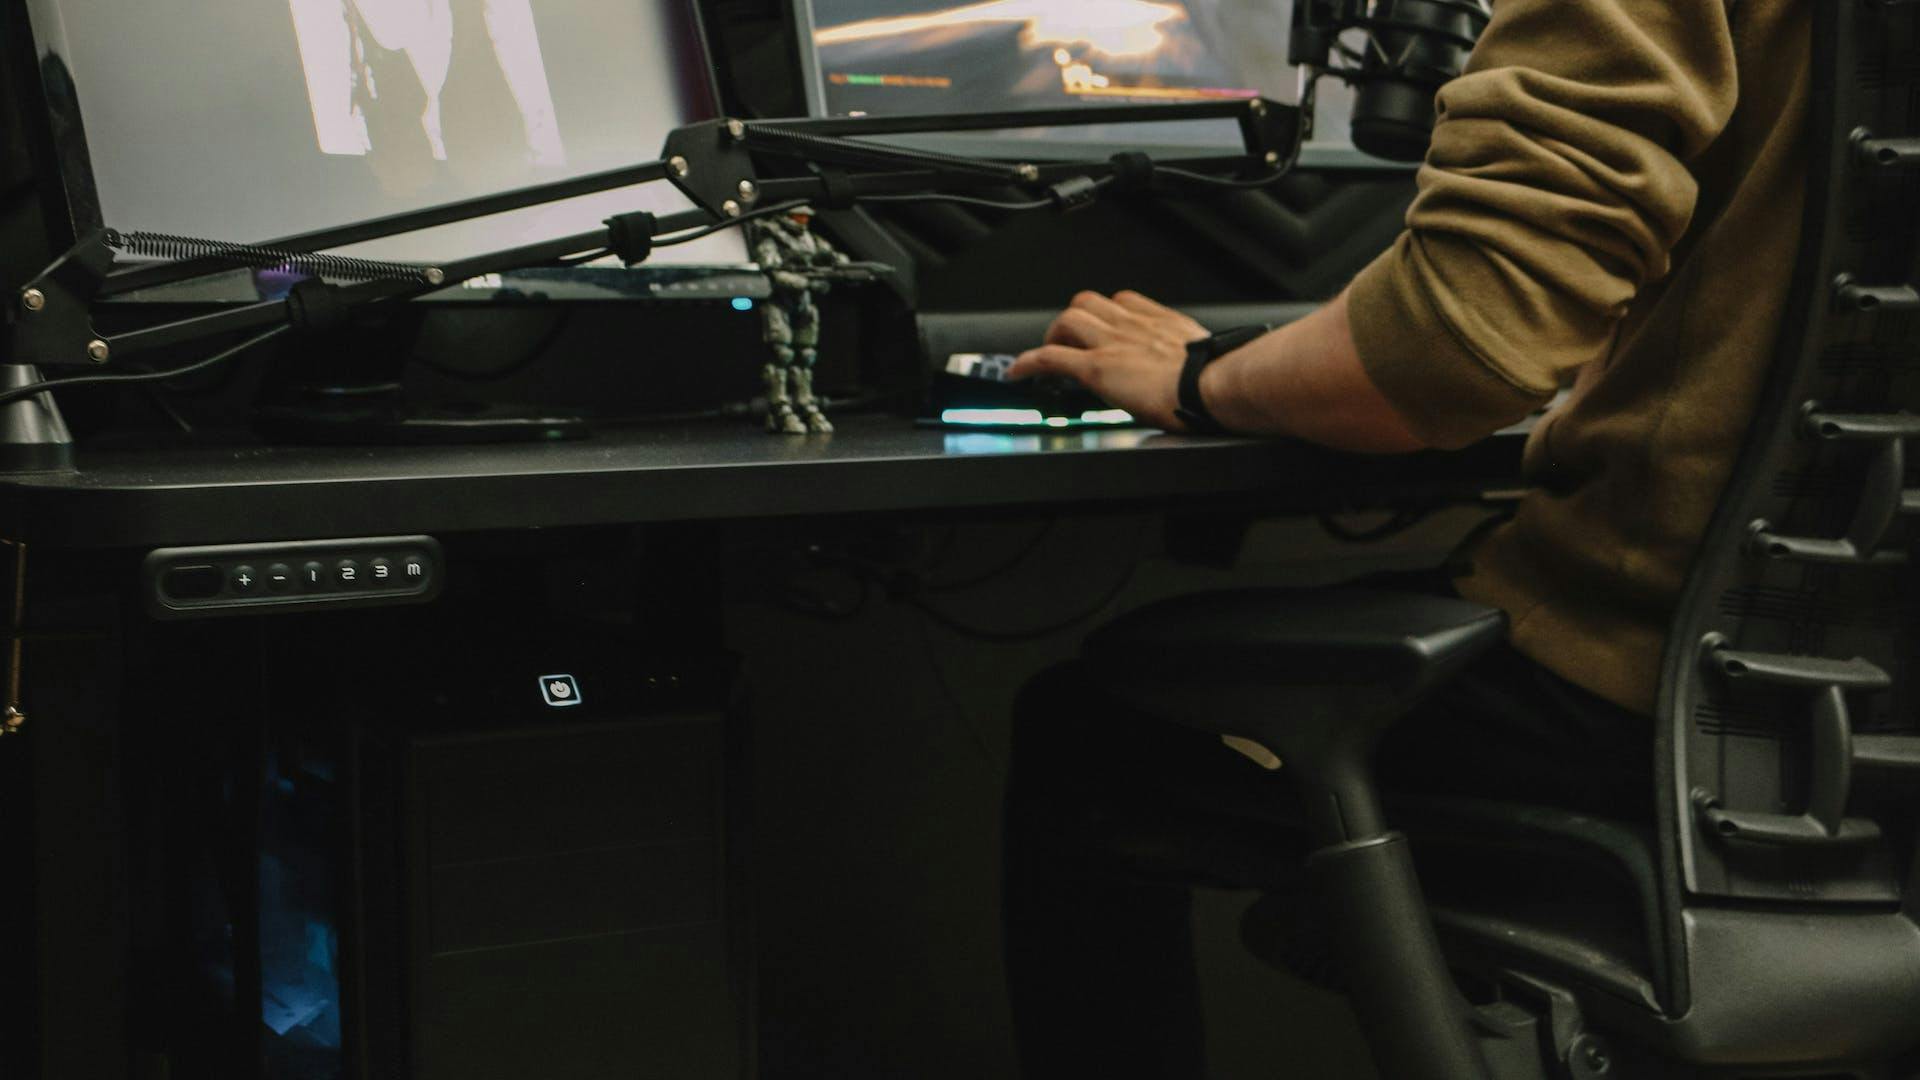 Nahansicht auf einen Gaming Tisch von LeetDesk an dem eine Person sitzt und unter dem keine Kabel im Beinbereich zu sehen sind